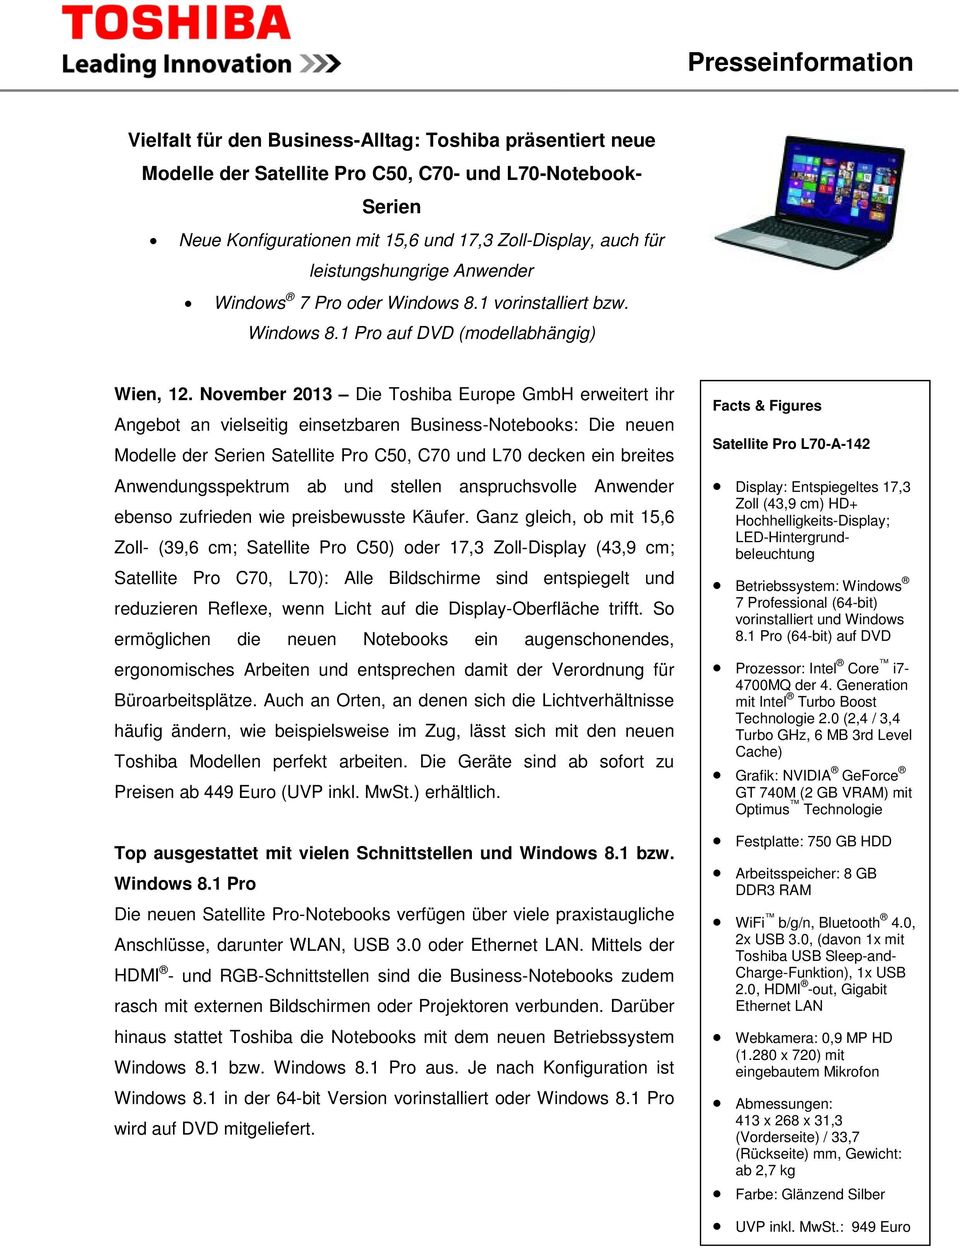 November 2013 Die Toshiba Europe GmbH erweitert ihr Angebot an vielseitig einsetzbaren Business-Notebooks: Die neuen Modelle der Serien Satellite Pro C50, C70 und L70 decken ein breites